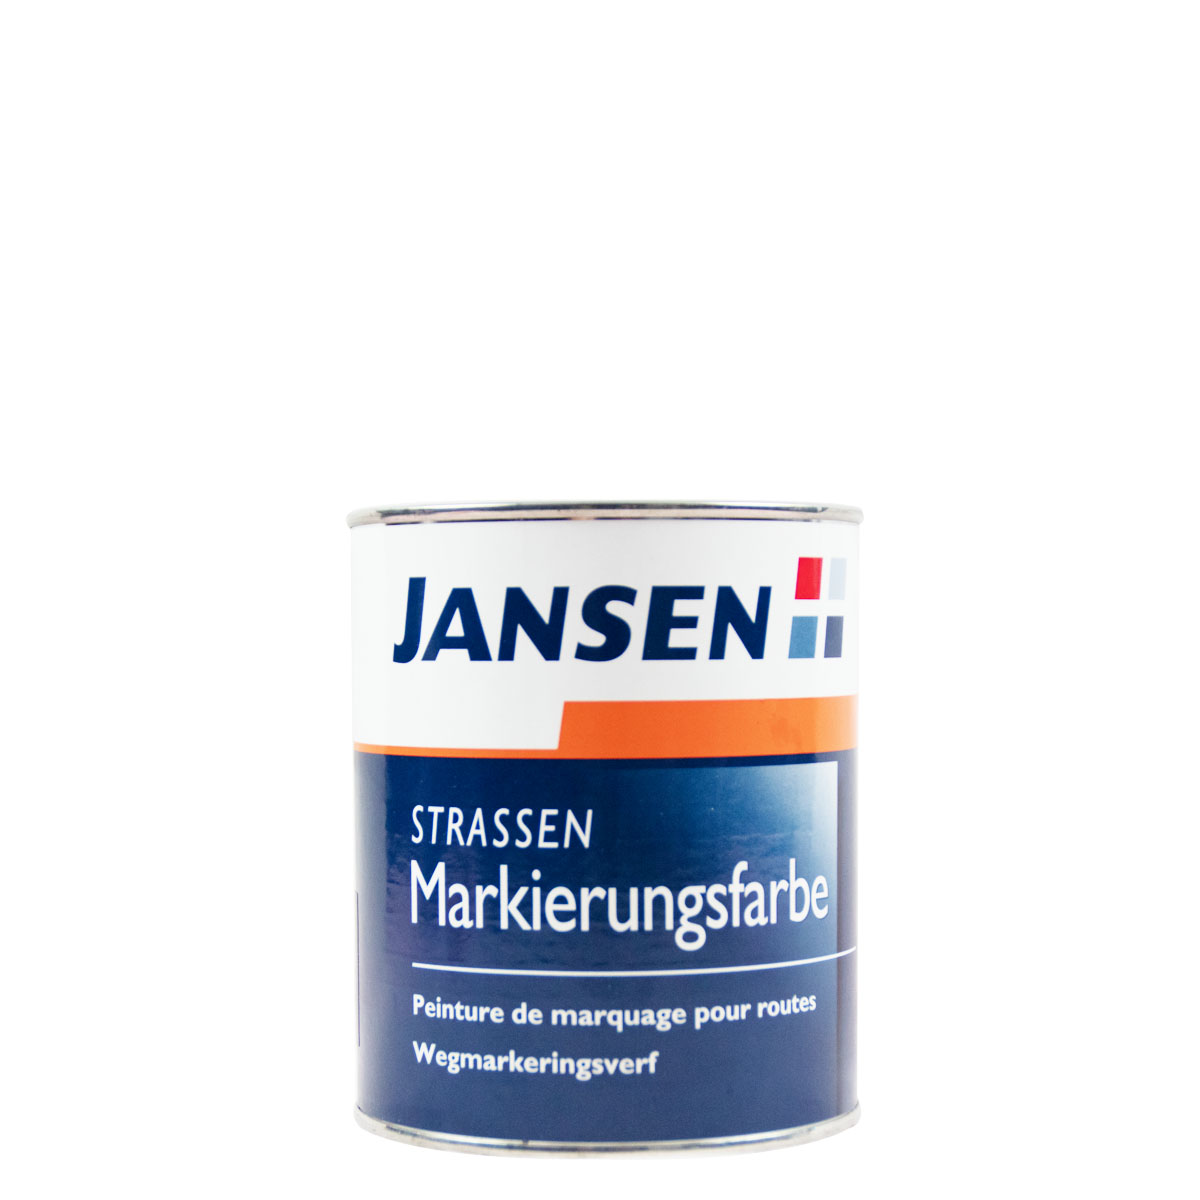 jansen_strassen_markierungsfarbe_gross